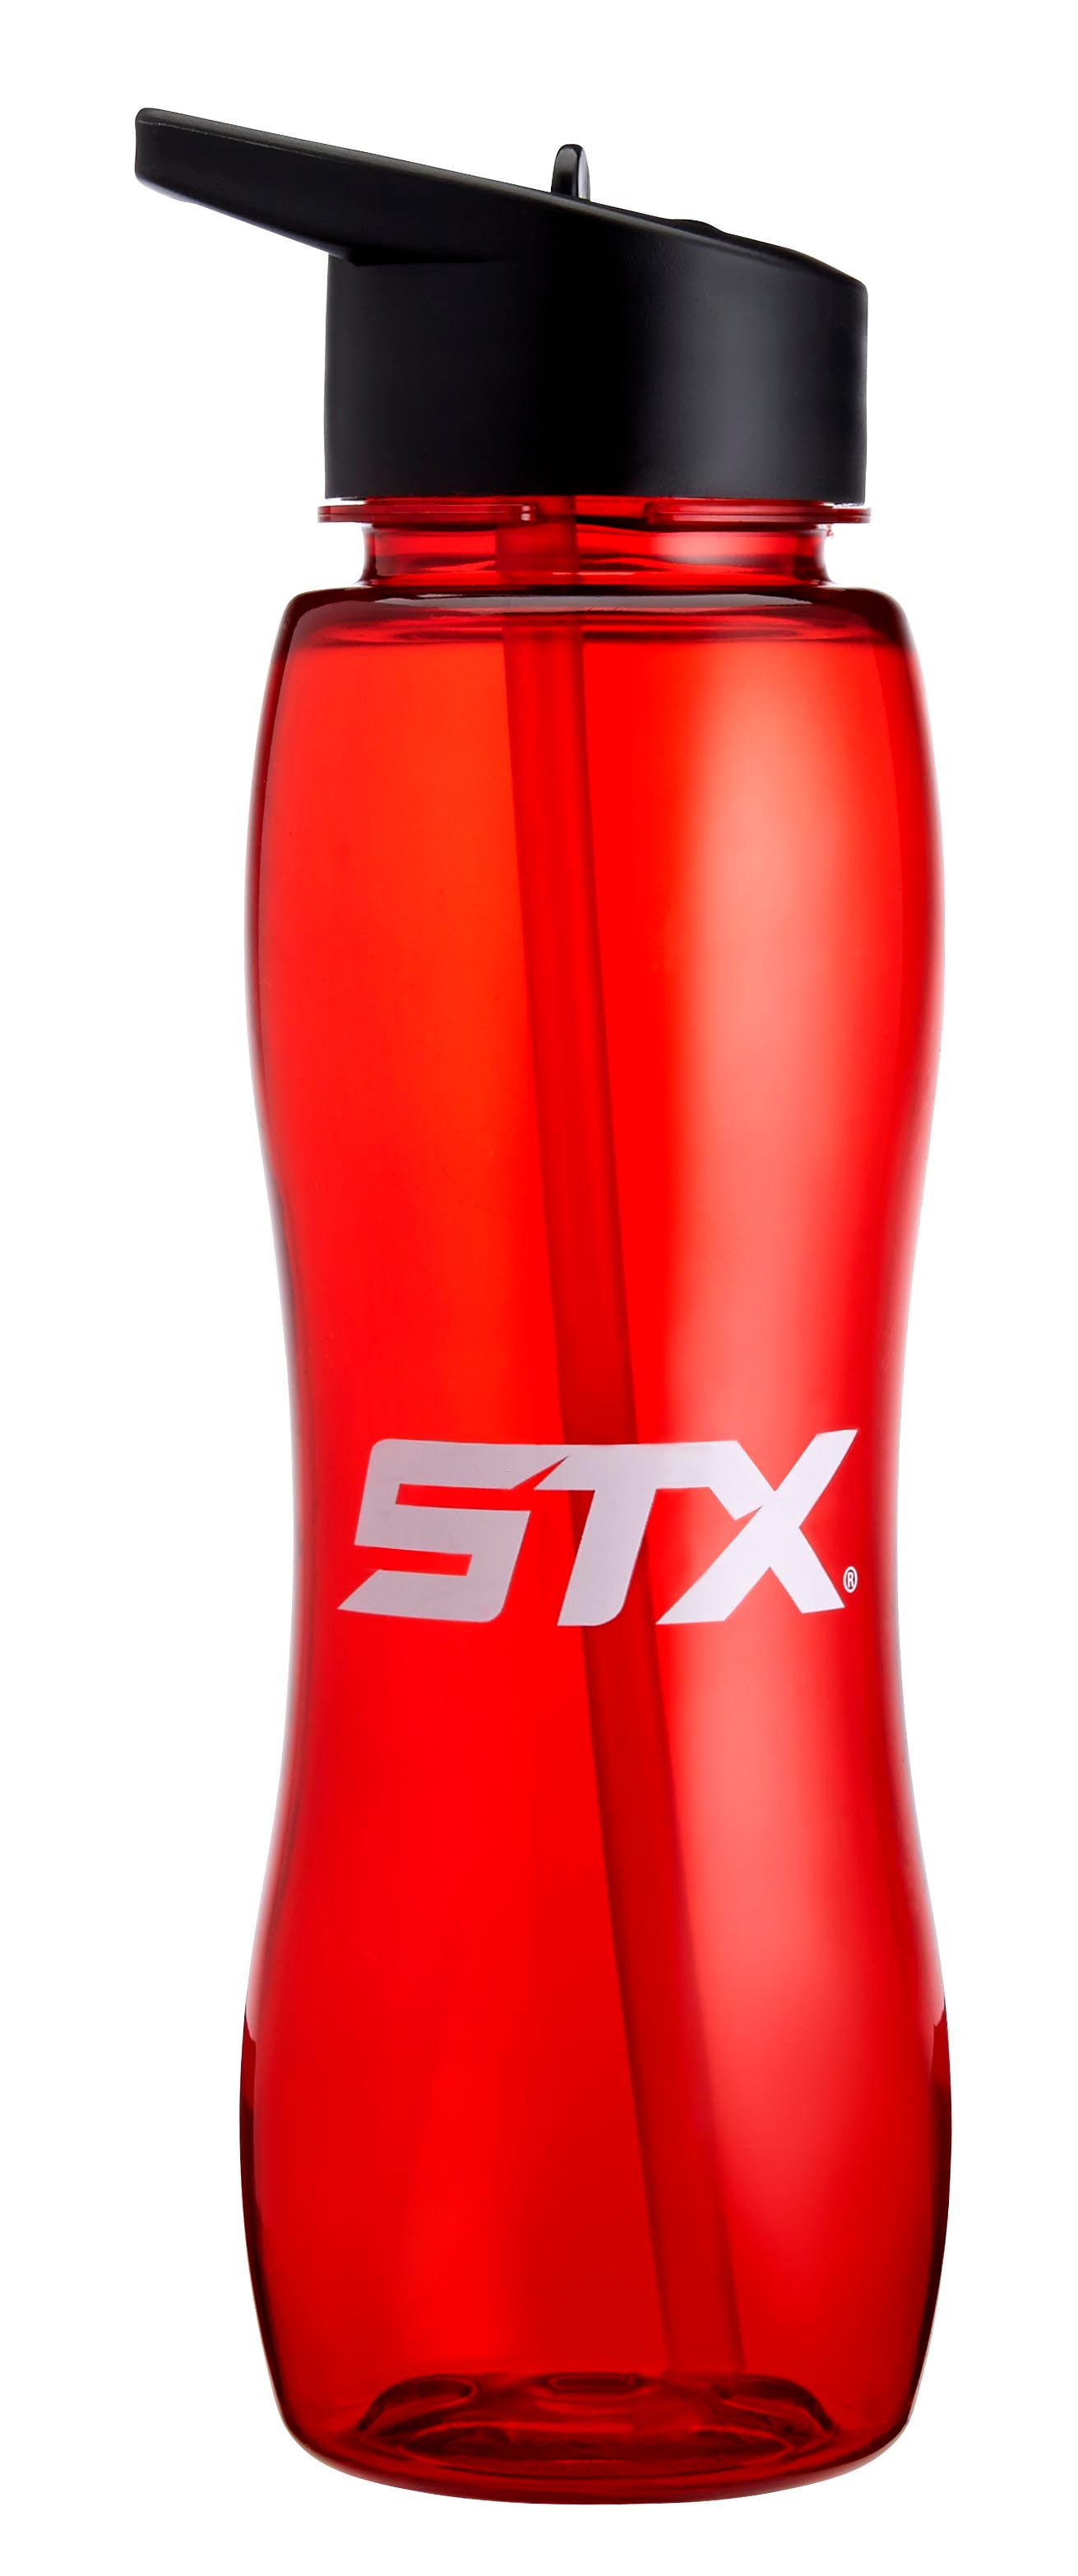 STX Long Straw Water Bottle - Clear